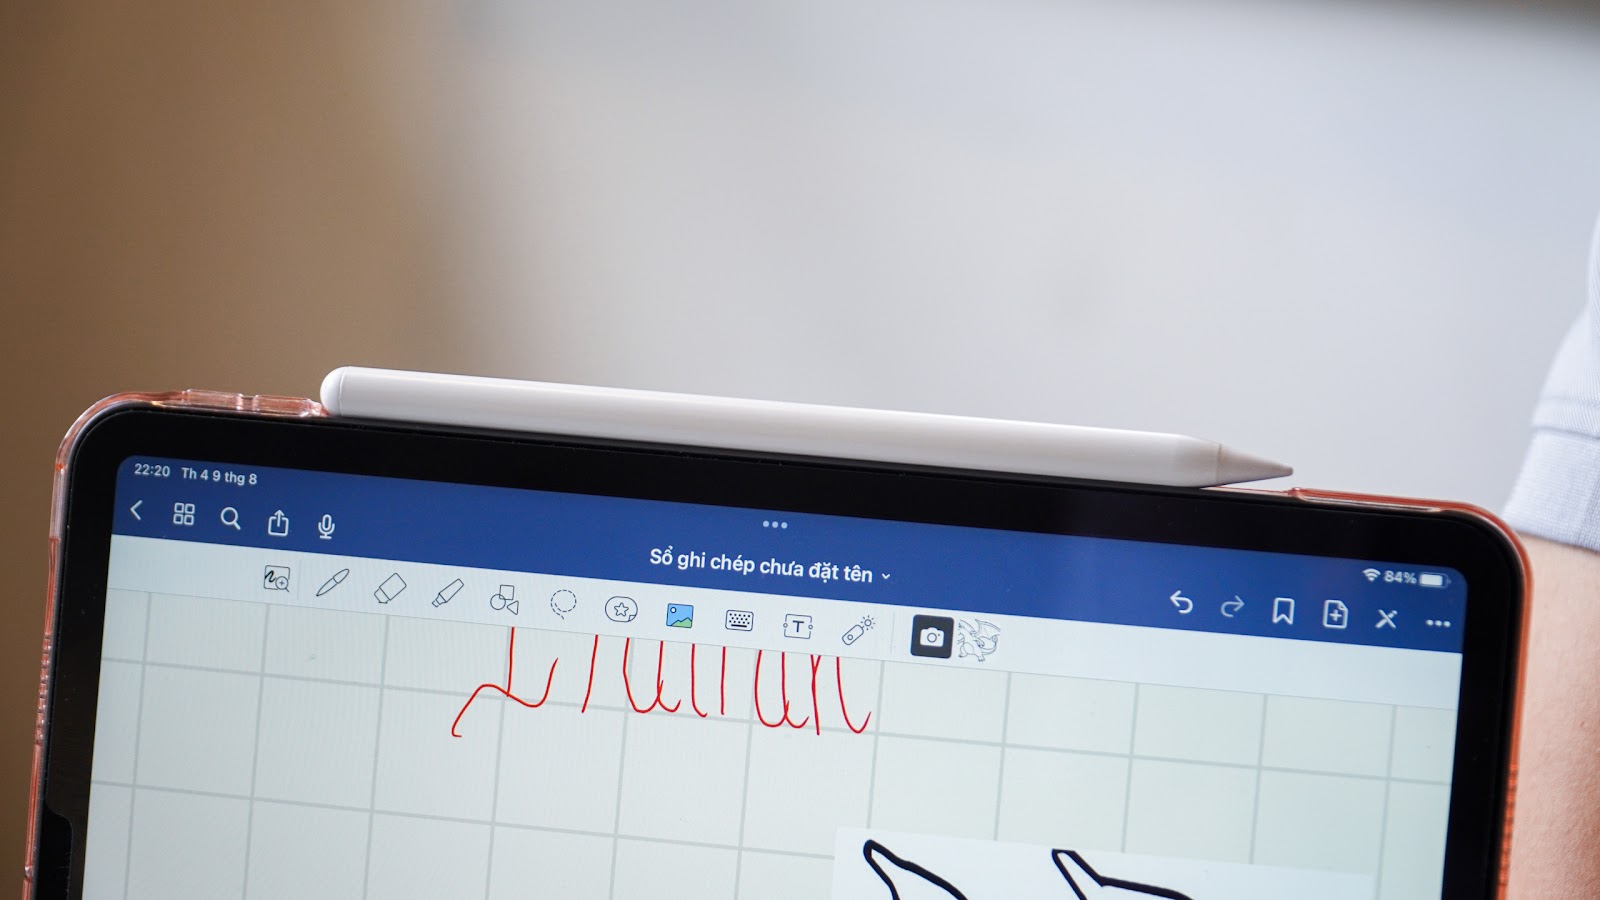 Trên tay bút cảm ứng TUCANO Stylus Pen: Phụ kiện đắc lực cho những người dùng yêu thích viết, vẽ trên iPad